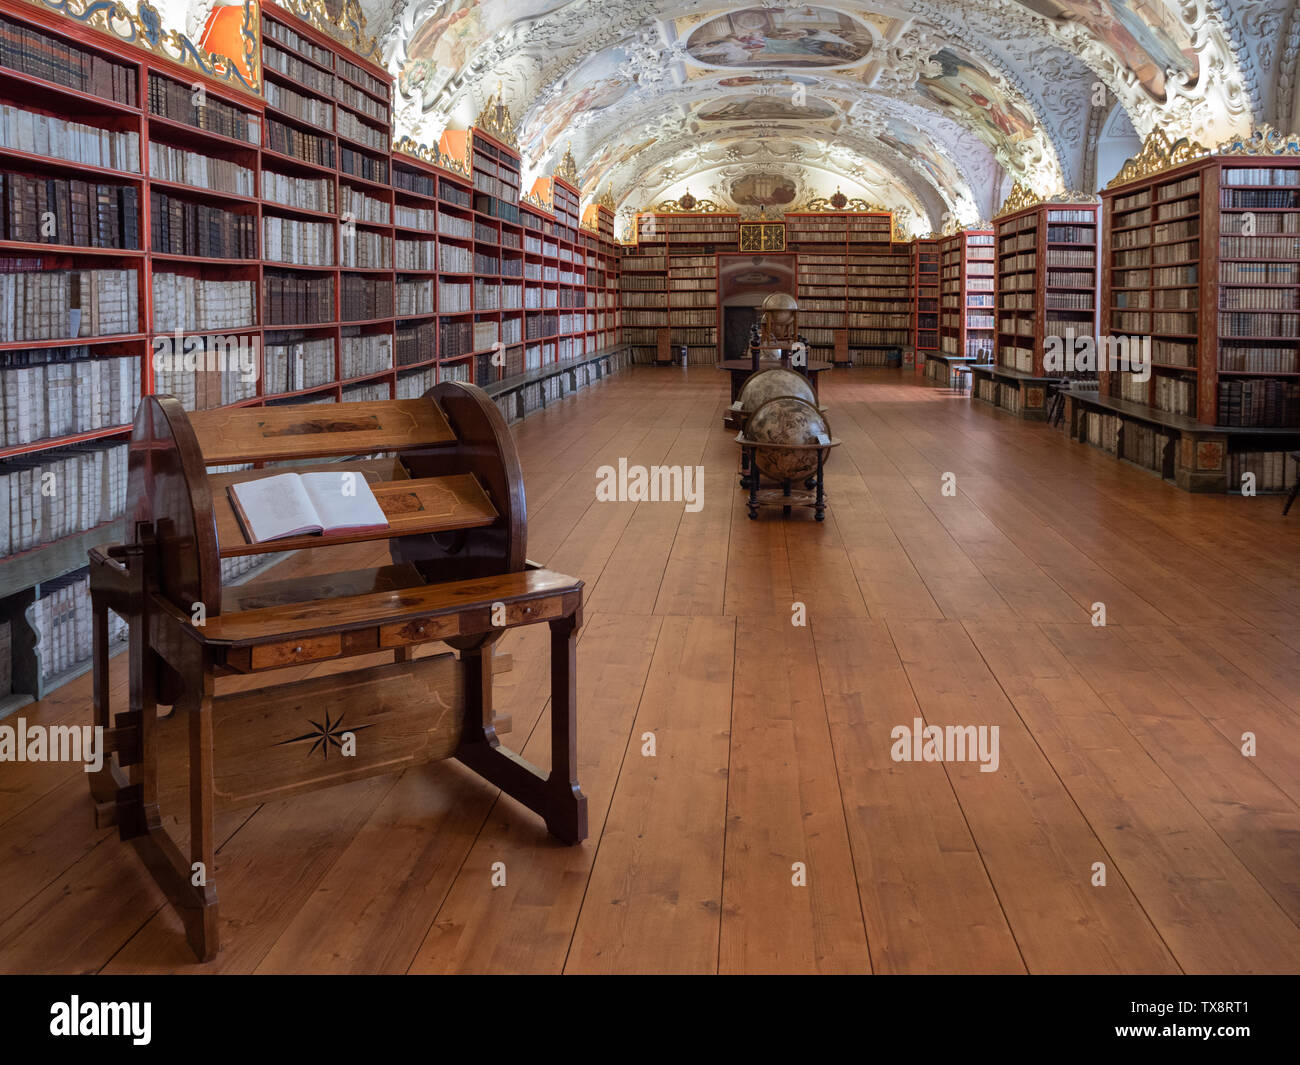 Prague, République Tchèque - 8 juin 2019 : l'intérieur de la bibliothèque de Strahov, le théologique Hall. Une célèbre bibliothèque Baroque en Bohême. Banque D'Images